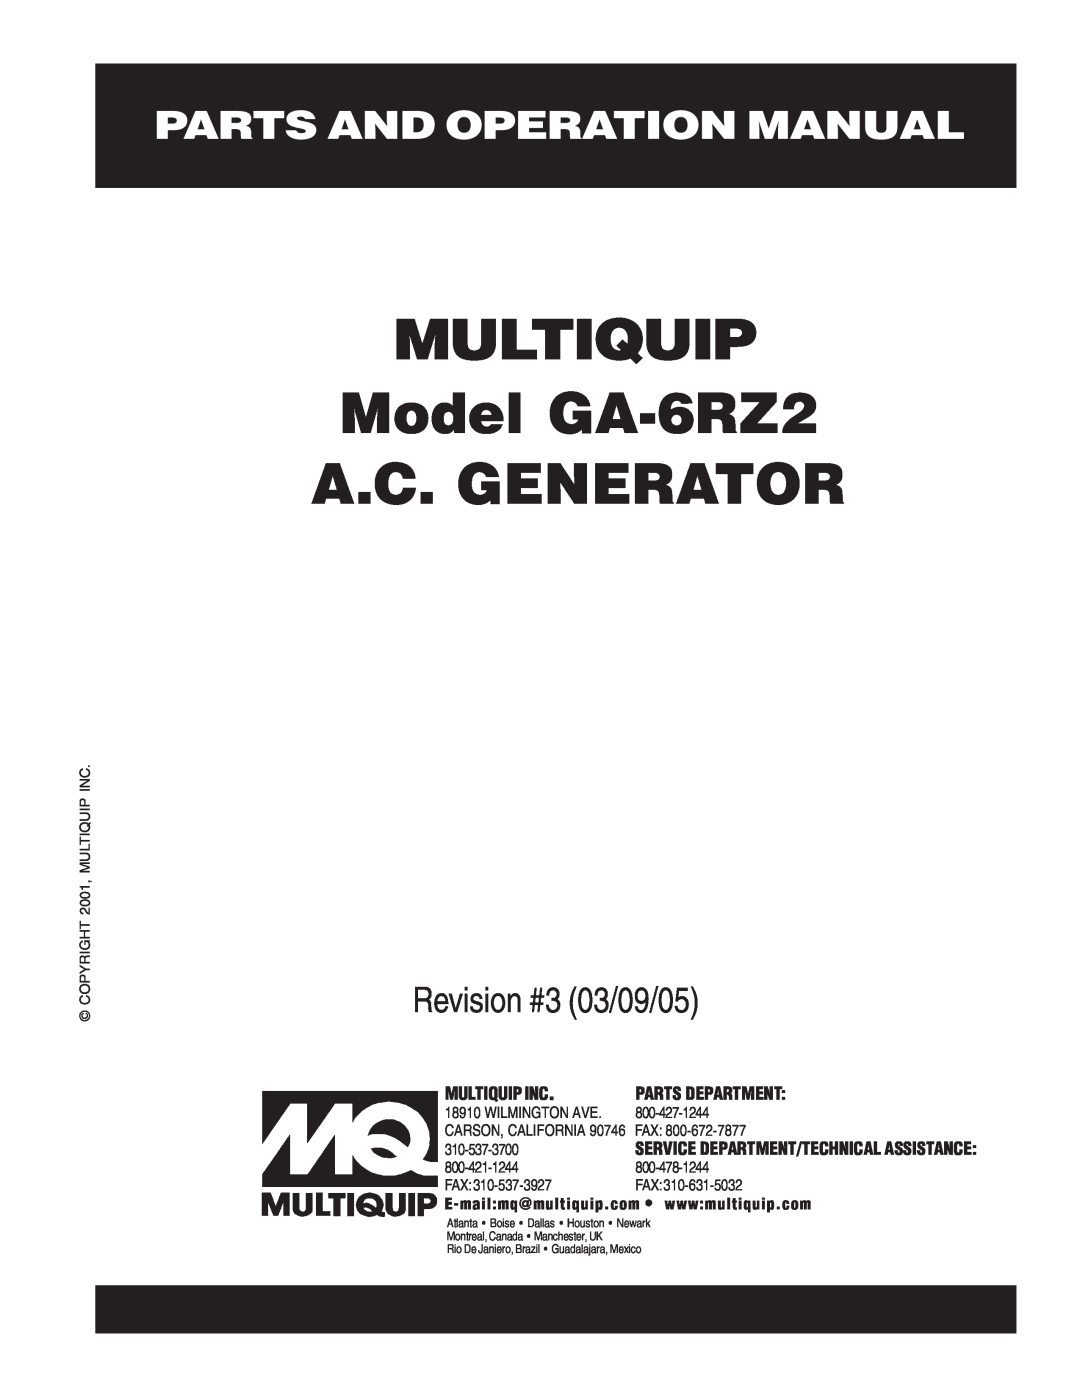 Multiquip operation manual MULTIQUIP Model GA-6RZ2 A.C. GENERATOR, Revision #3 03/09/05, Multiquip Inc, Wilmington Ave 